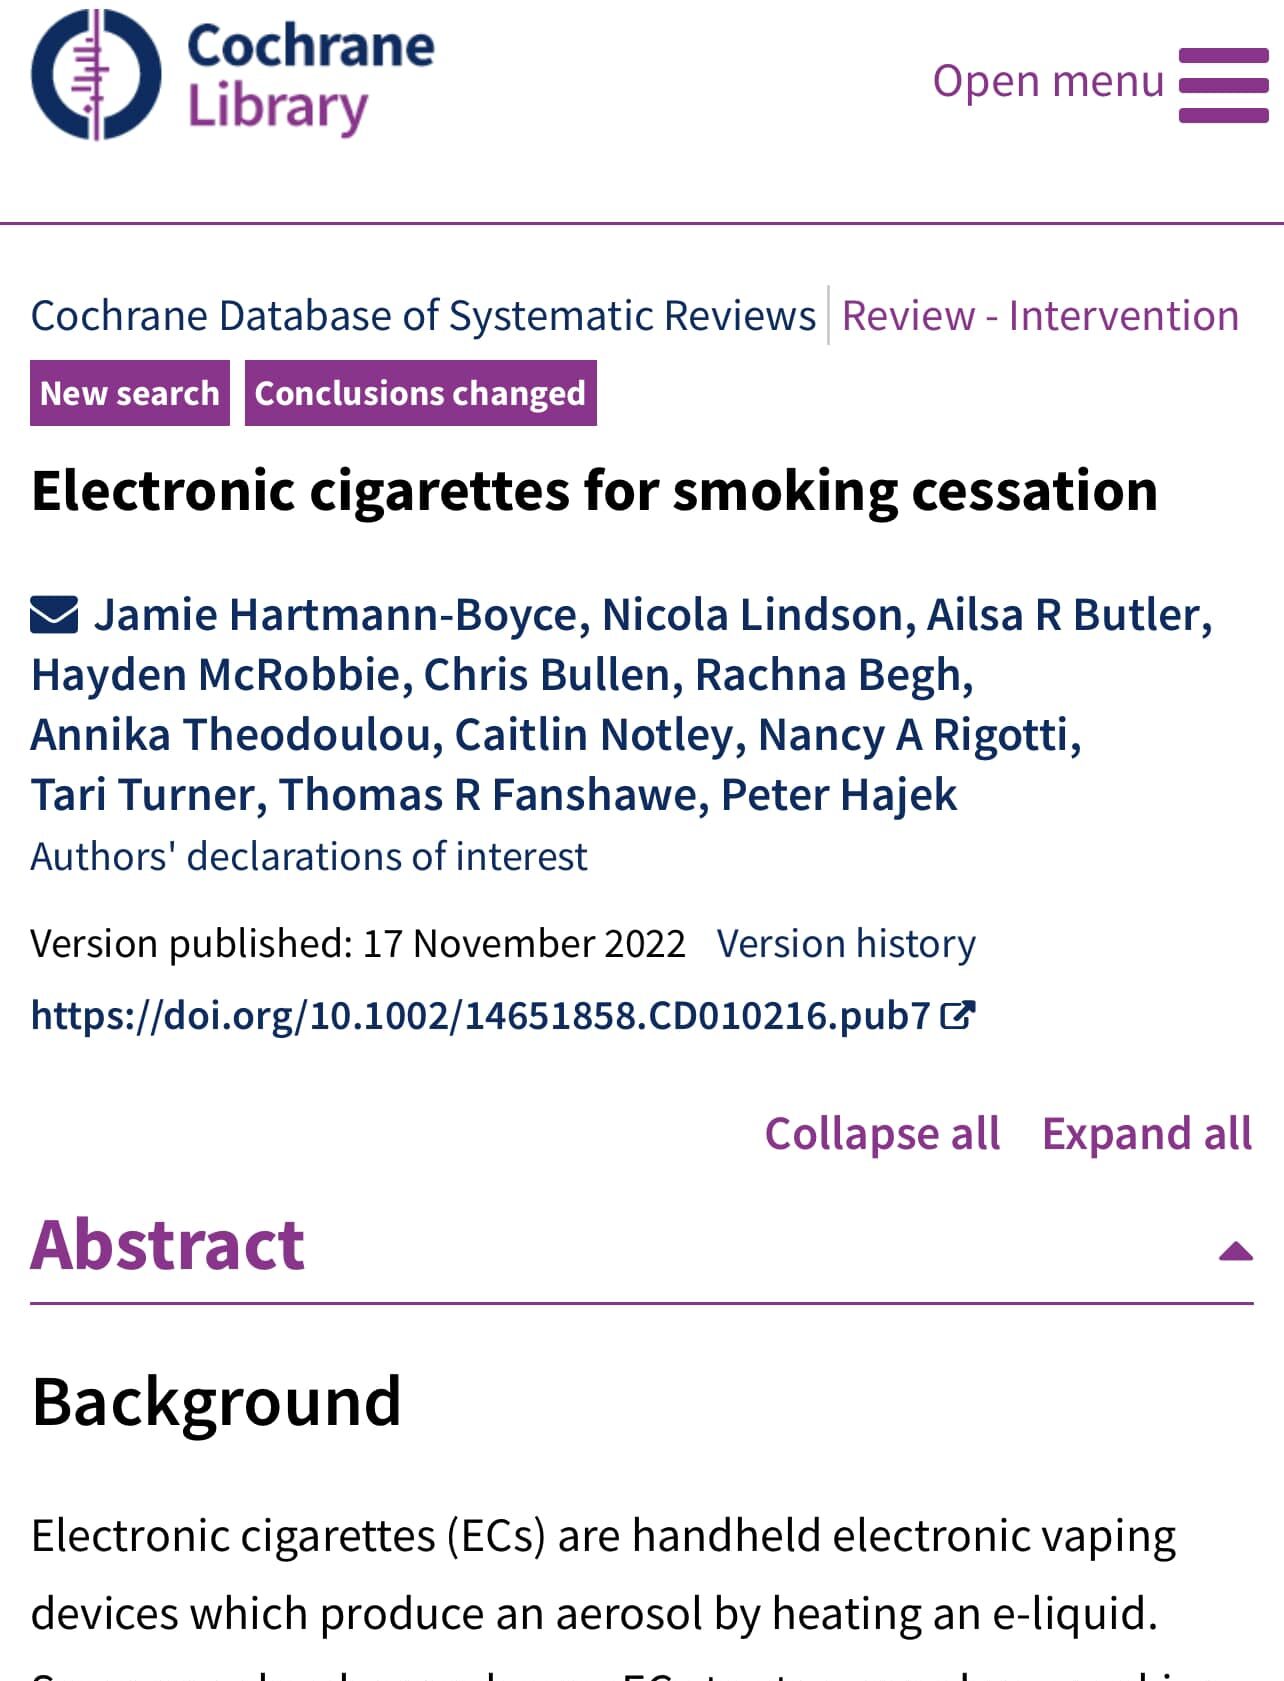 ACTUALIZACION Cochrane – Cigarrillos electrónicos para dejar de fumar: «Hay pruebas de alta certeza de que los cigarrillos electrónicos con nicotina aumentan las tasas de abandono en comparación con la terapia de reemplazo de nicotina…»